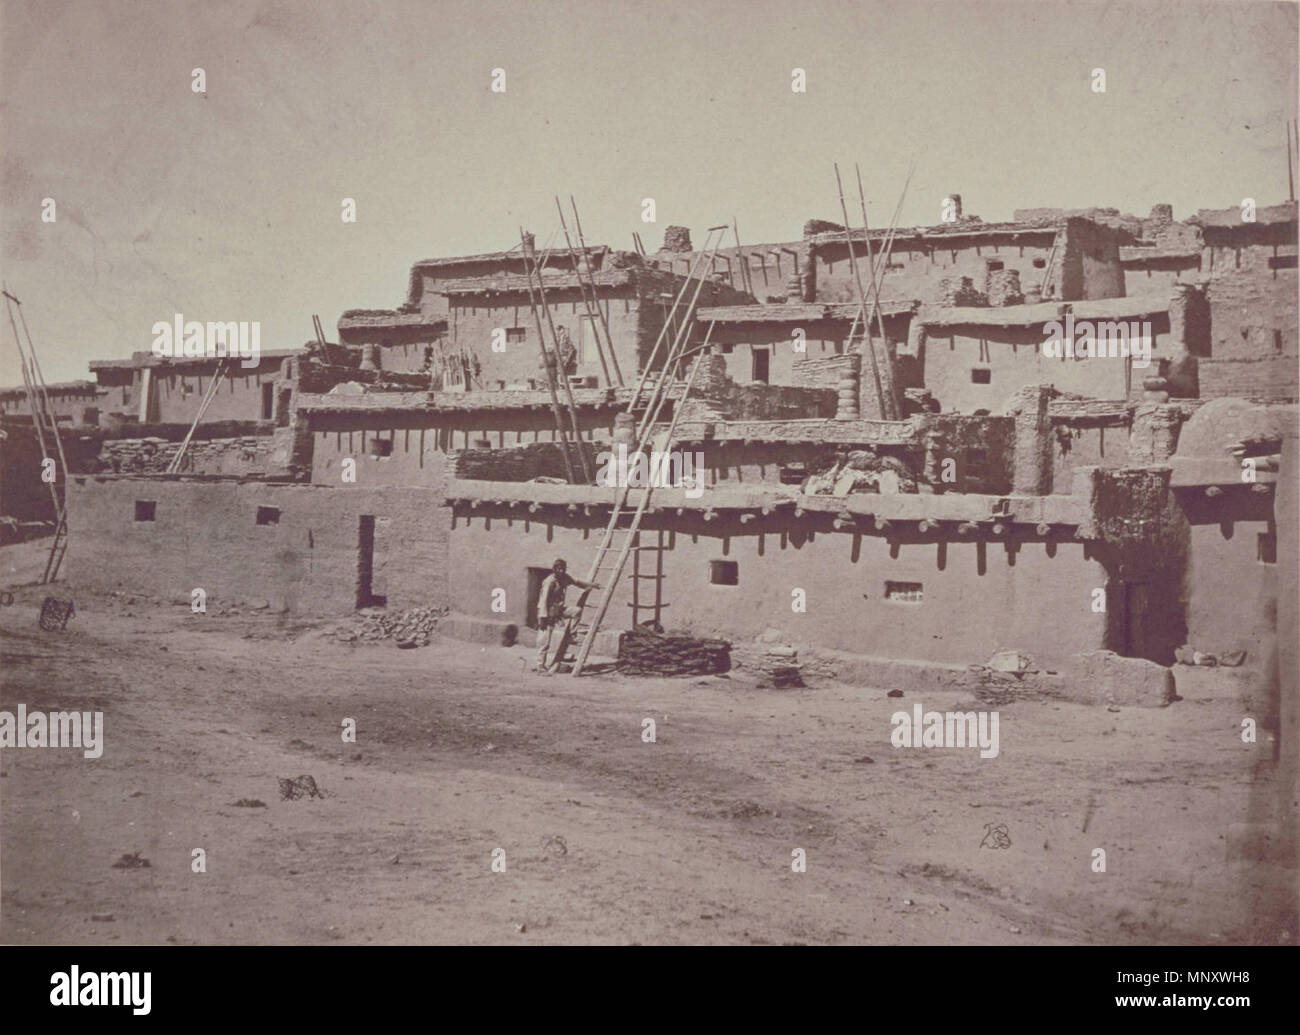 Sezione del lato sud di Zuni Pueblo, N. M. WHEELER, George M., 1Lt. --Le fotografie che mostrano paesaggi, geologiche e di altre caratteristiche, di porzioni di territorio occidentale degli Stati Uniti ottenuta in combinazione con...esplorazioni e indagini a ovest del meridiano 100.-- a Washington DC: Corpo degli Ingegneri, U.S. Esercito, 1871, 1872, 1873. 1873. 1194 Timothy H. O'Sullivan - Sezione del lato sud di Zuni Pueblo - GEH .197900140050 Foto Stock